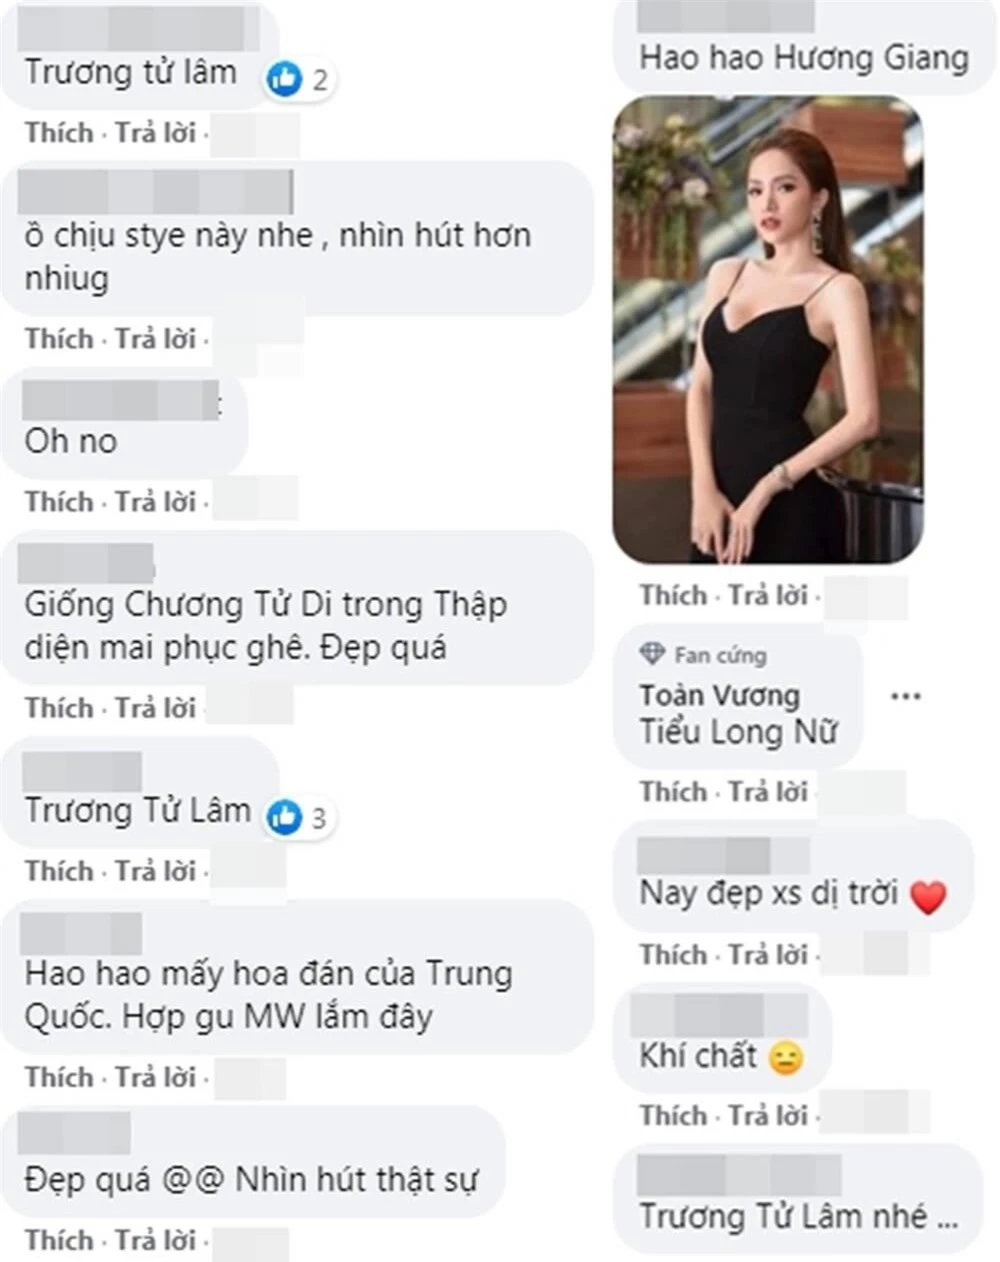 Khoảnh khắc Đỗ Thị Hà được fan khen xinh giống Hoa hậu Thế giới Trương Tử Lâm 'gây sốt' ảnh 4